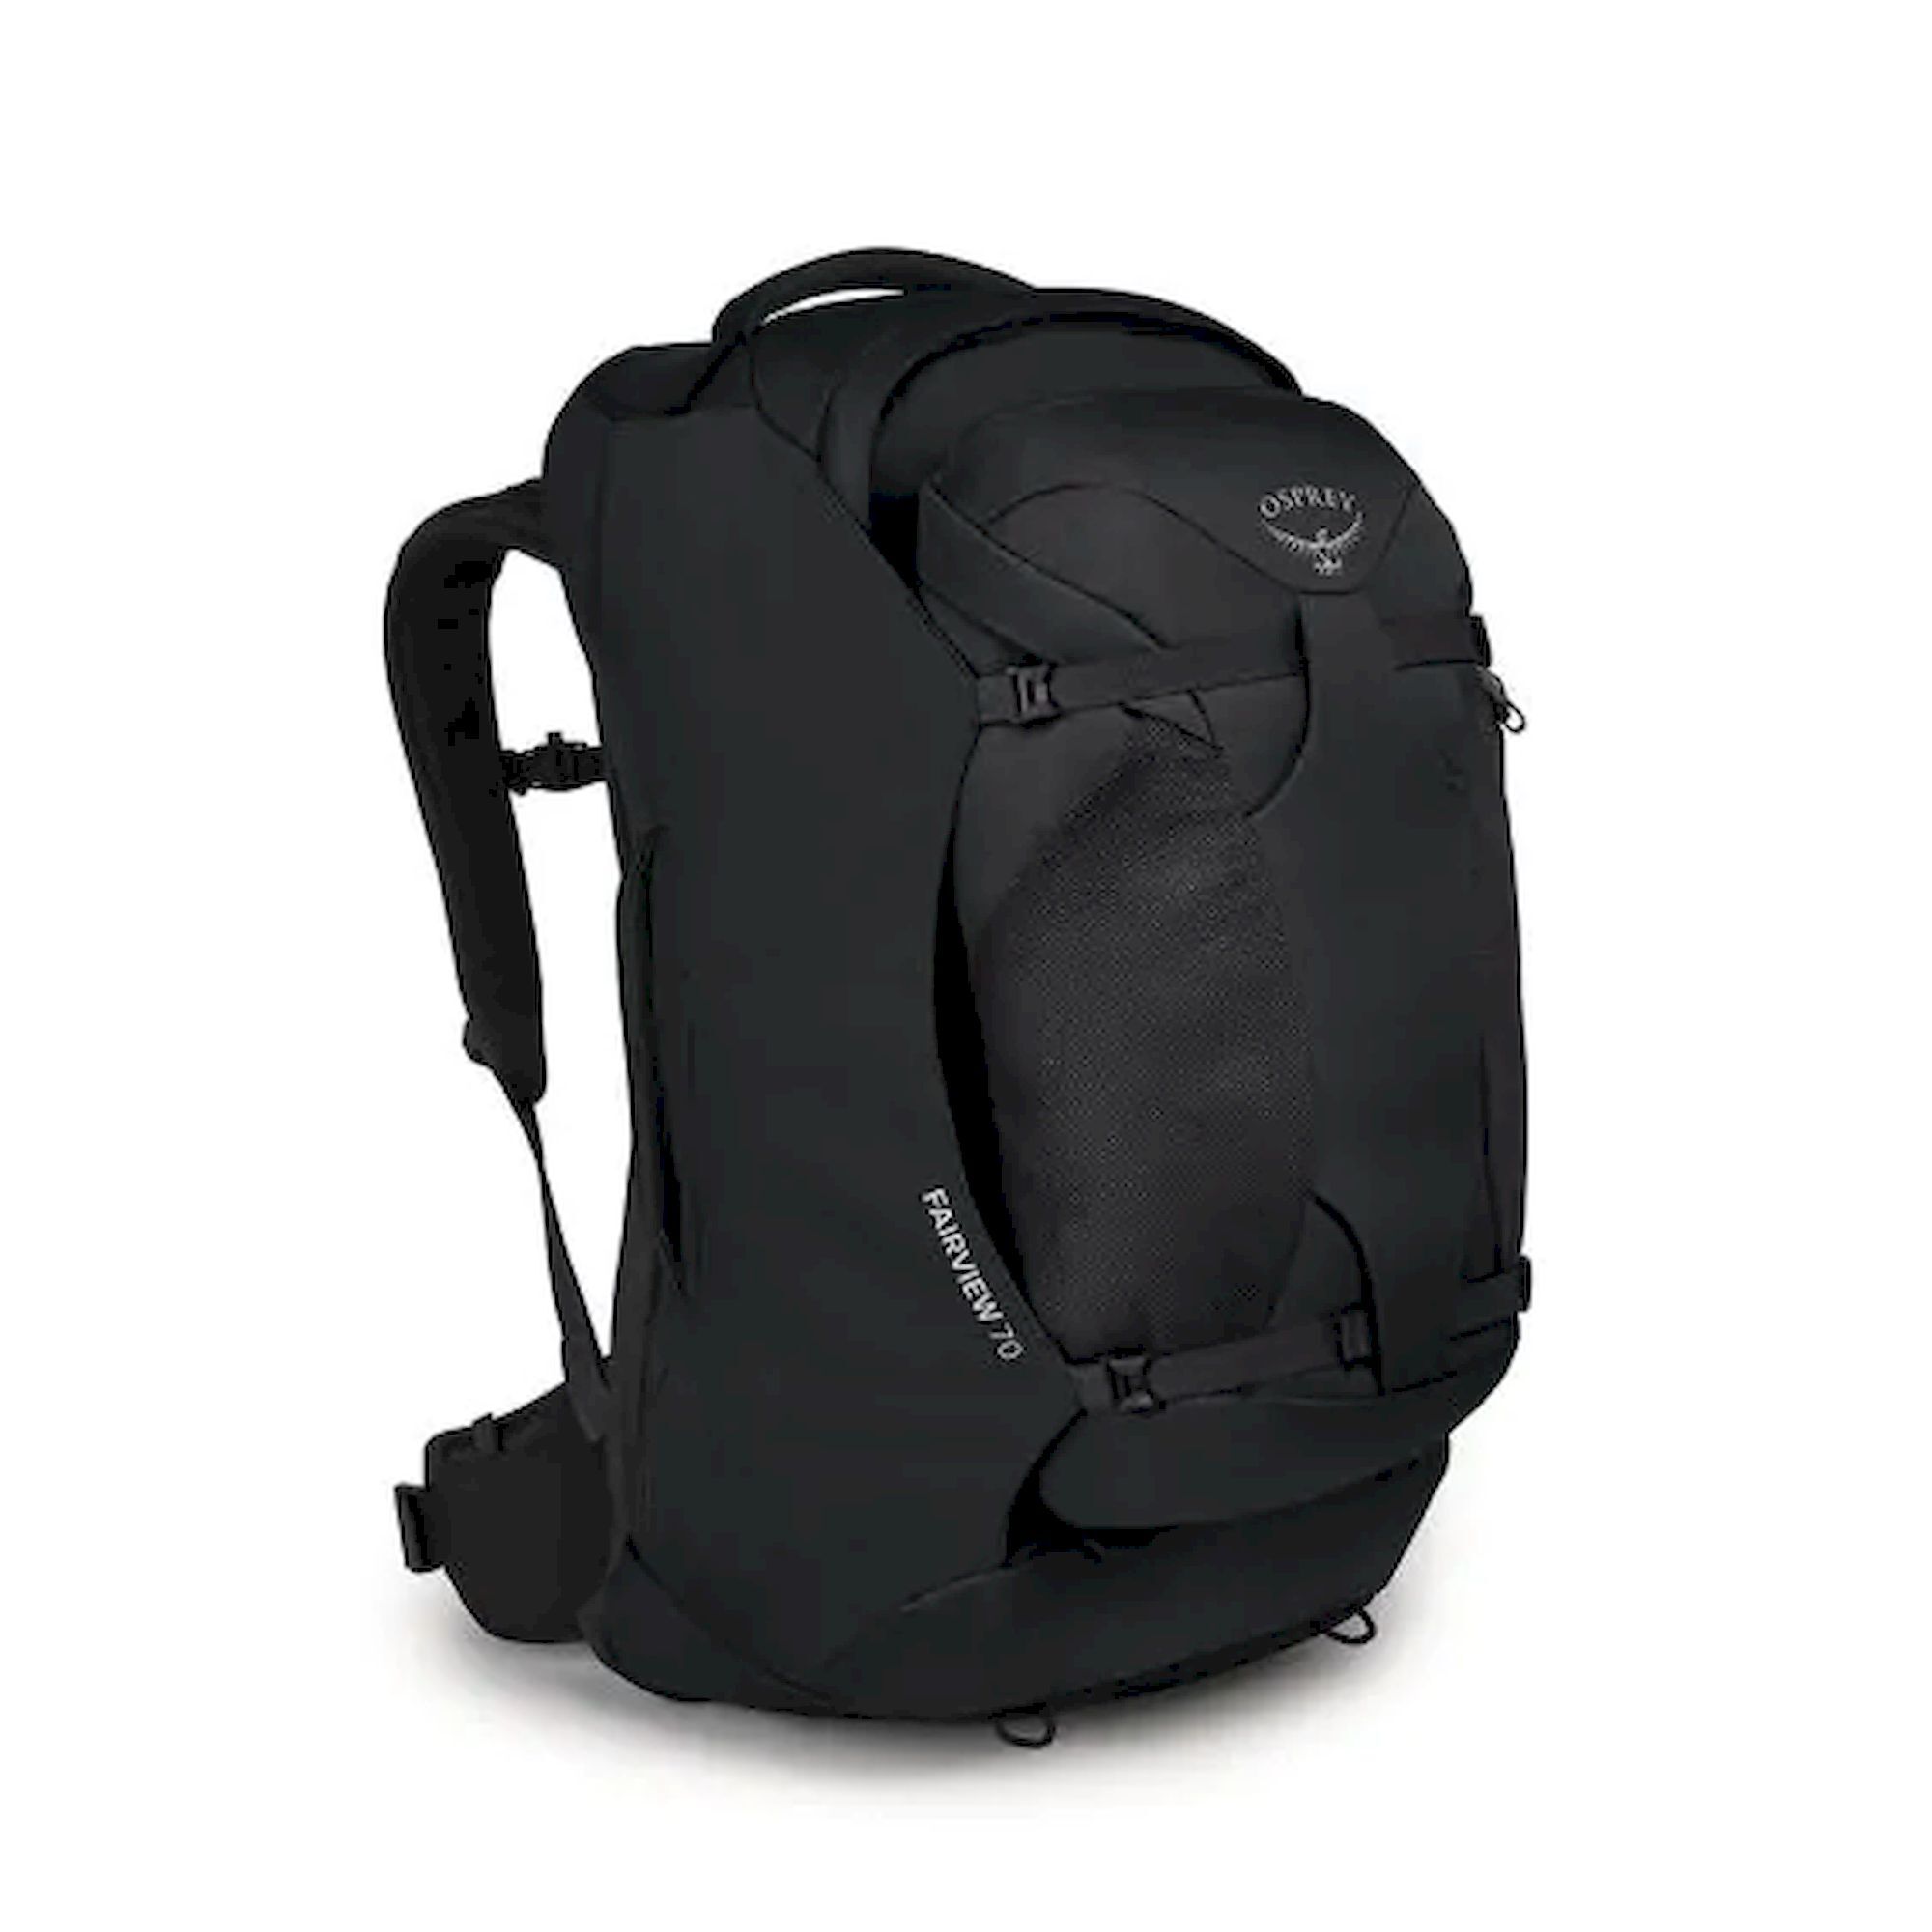 Osprey - Fairview 70 - Travel bag